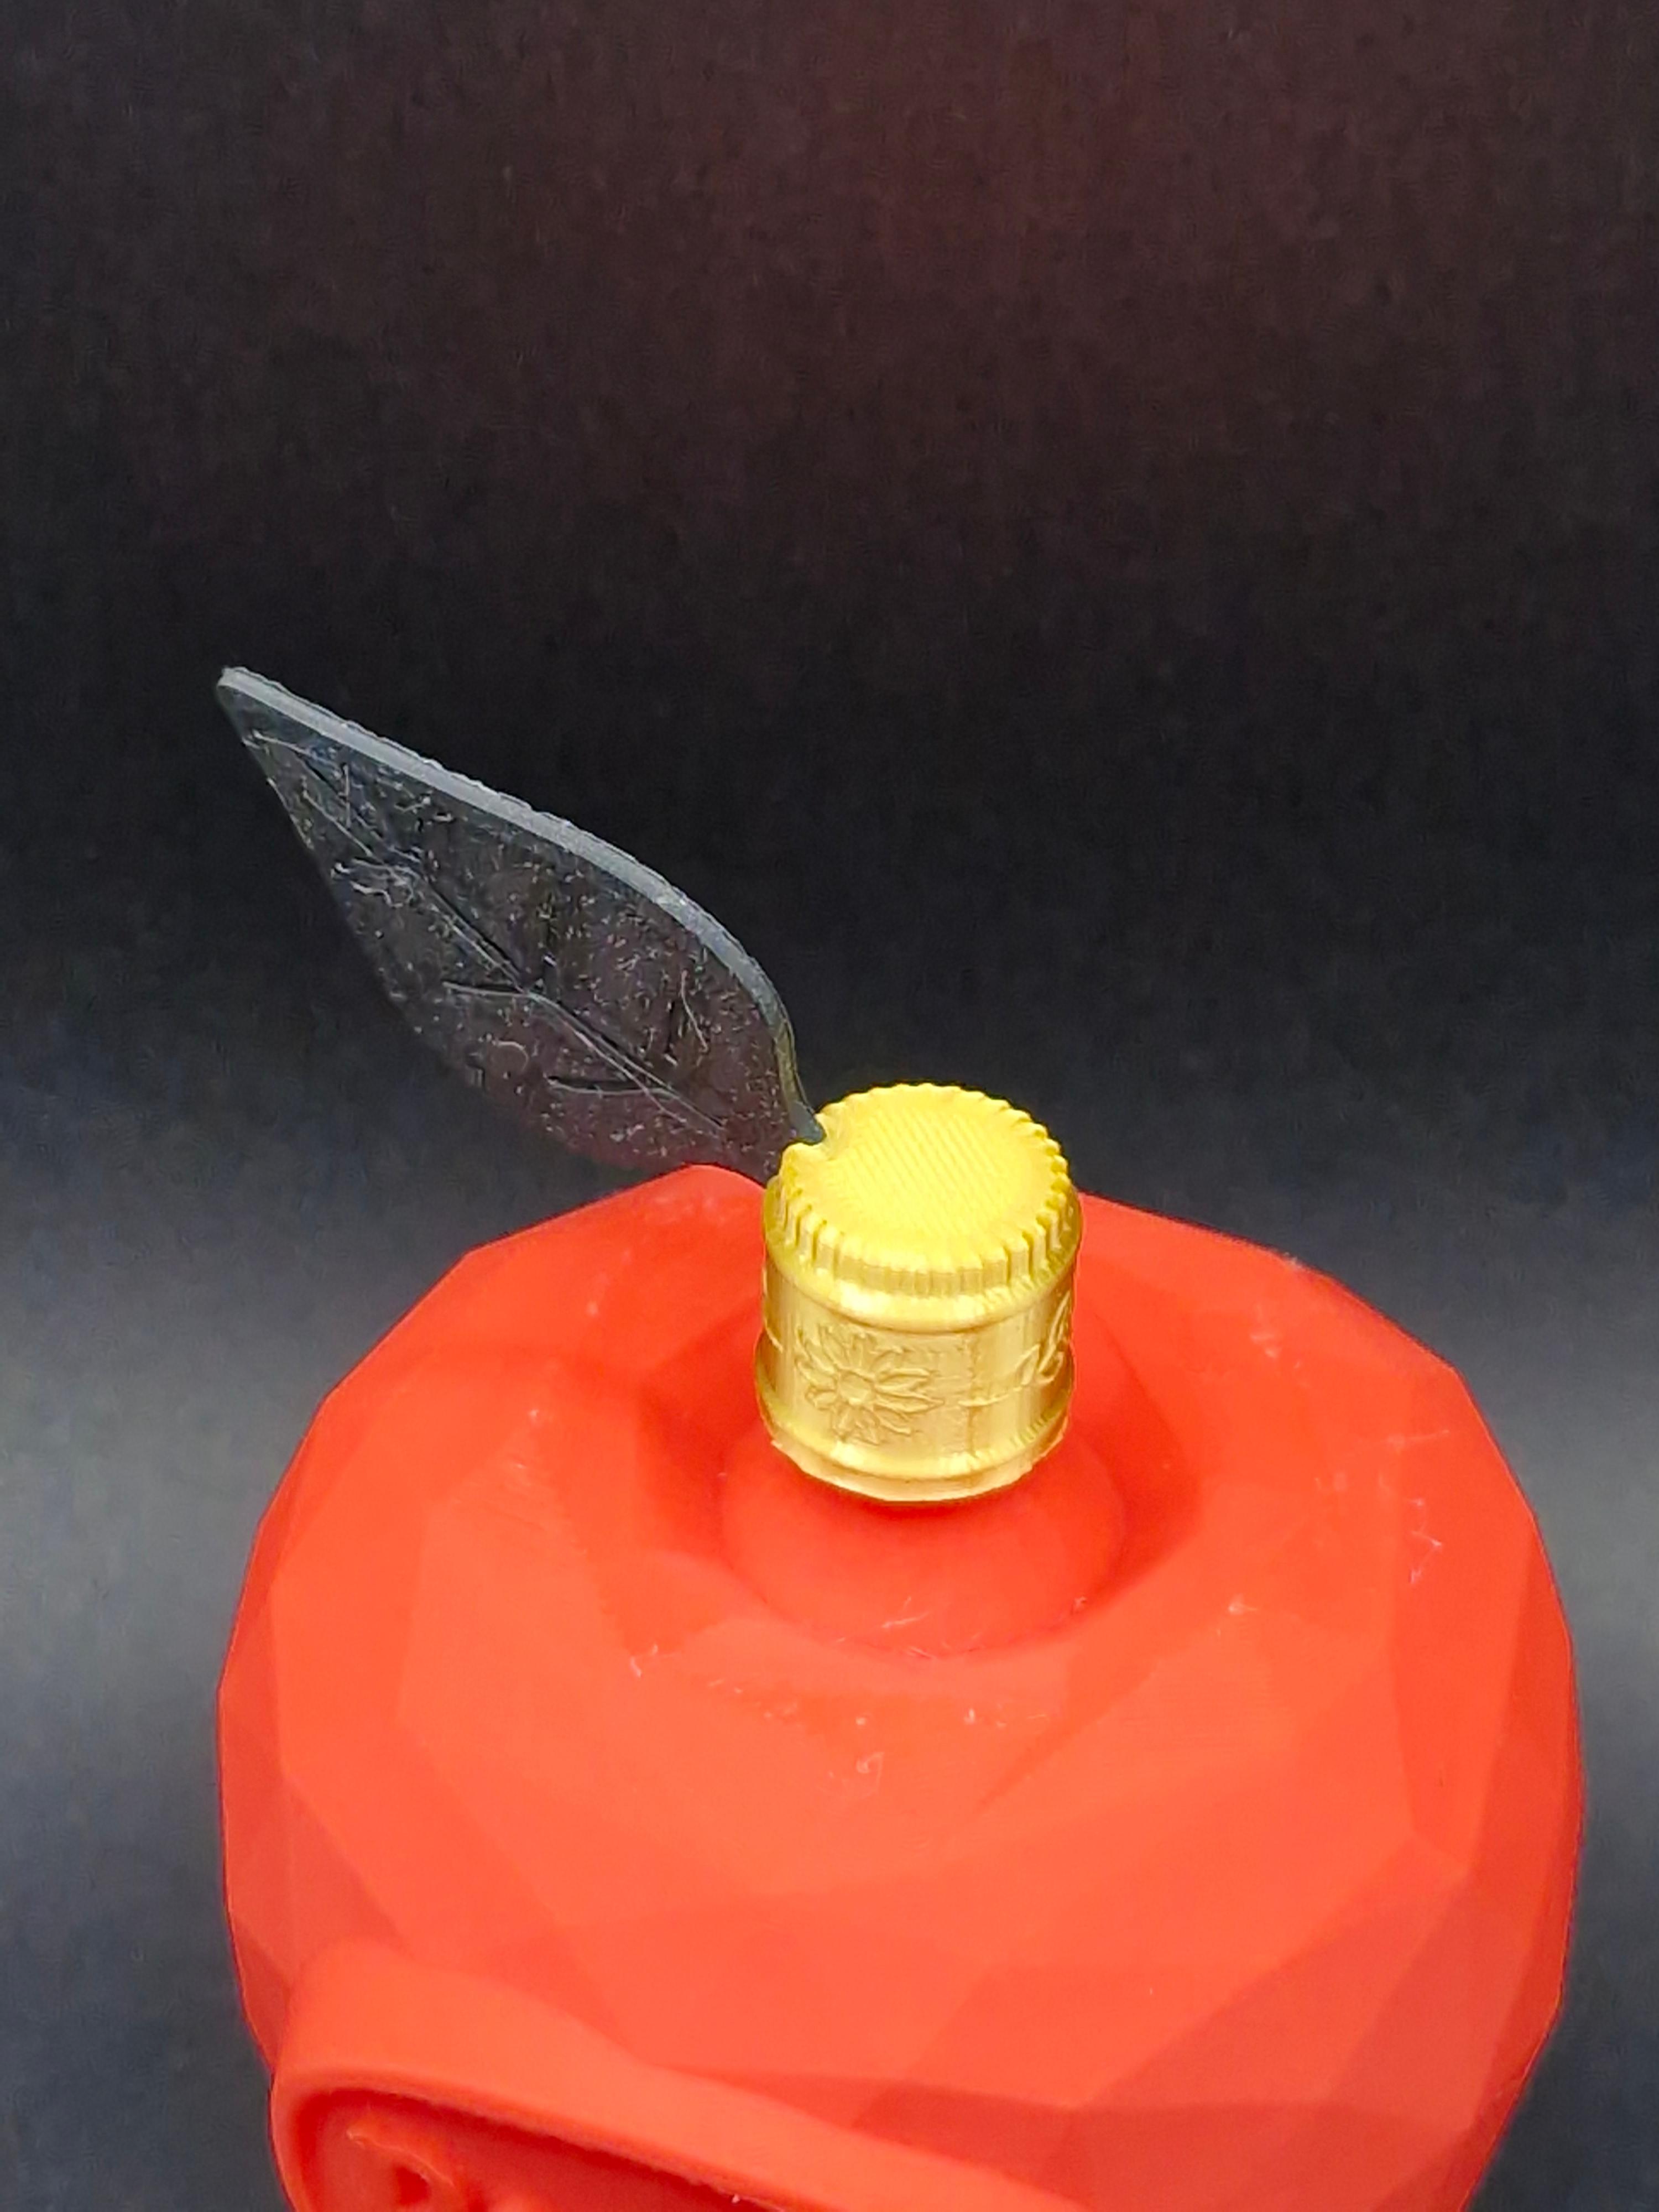 Poison Apple Display Bottle 3d model